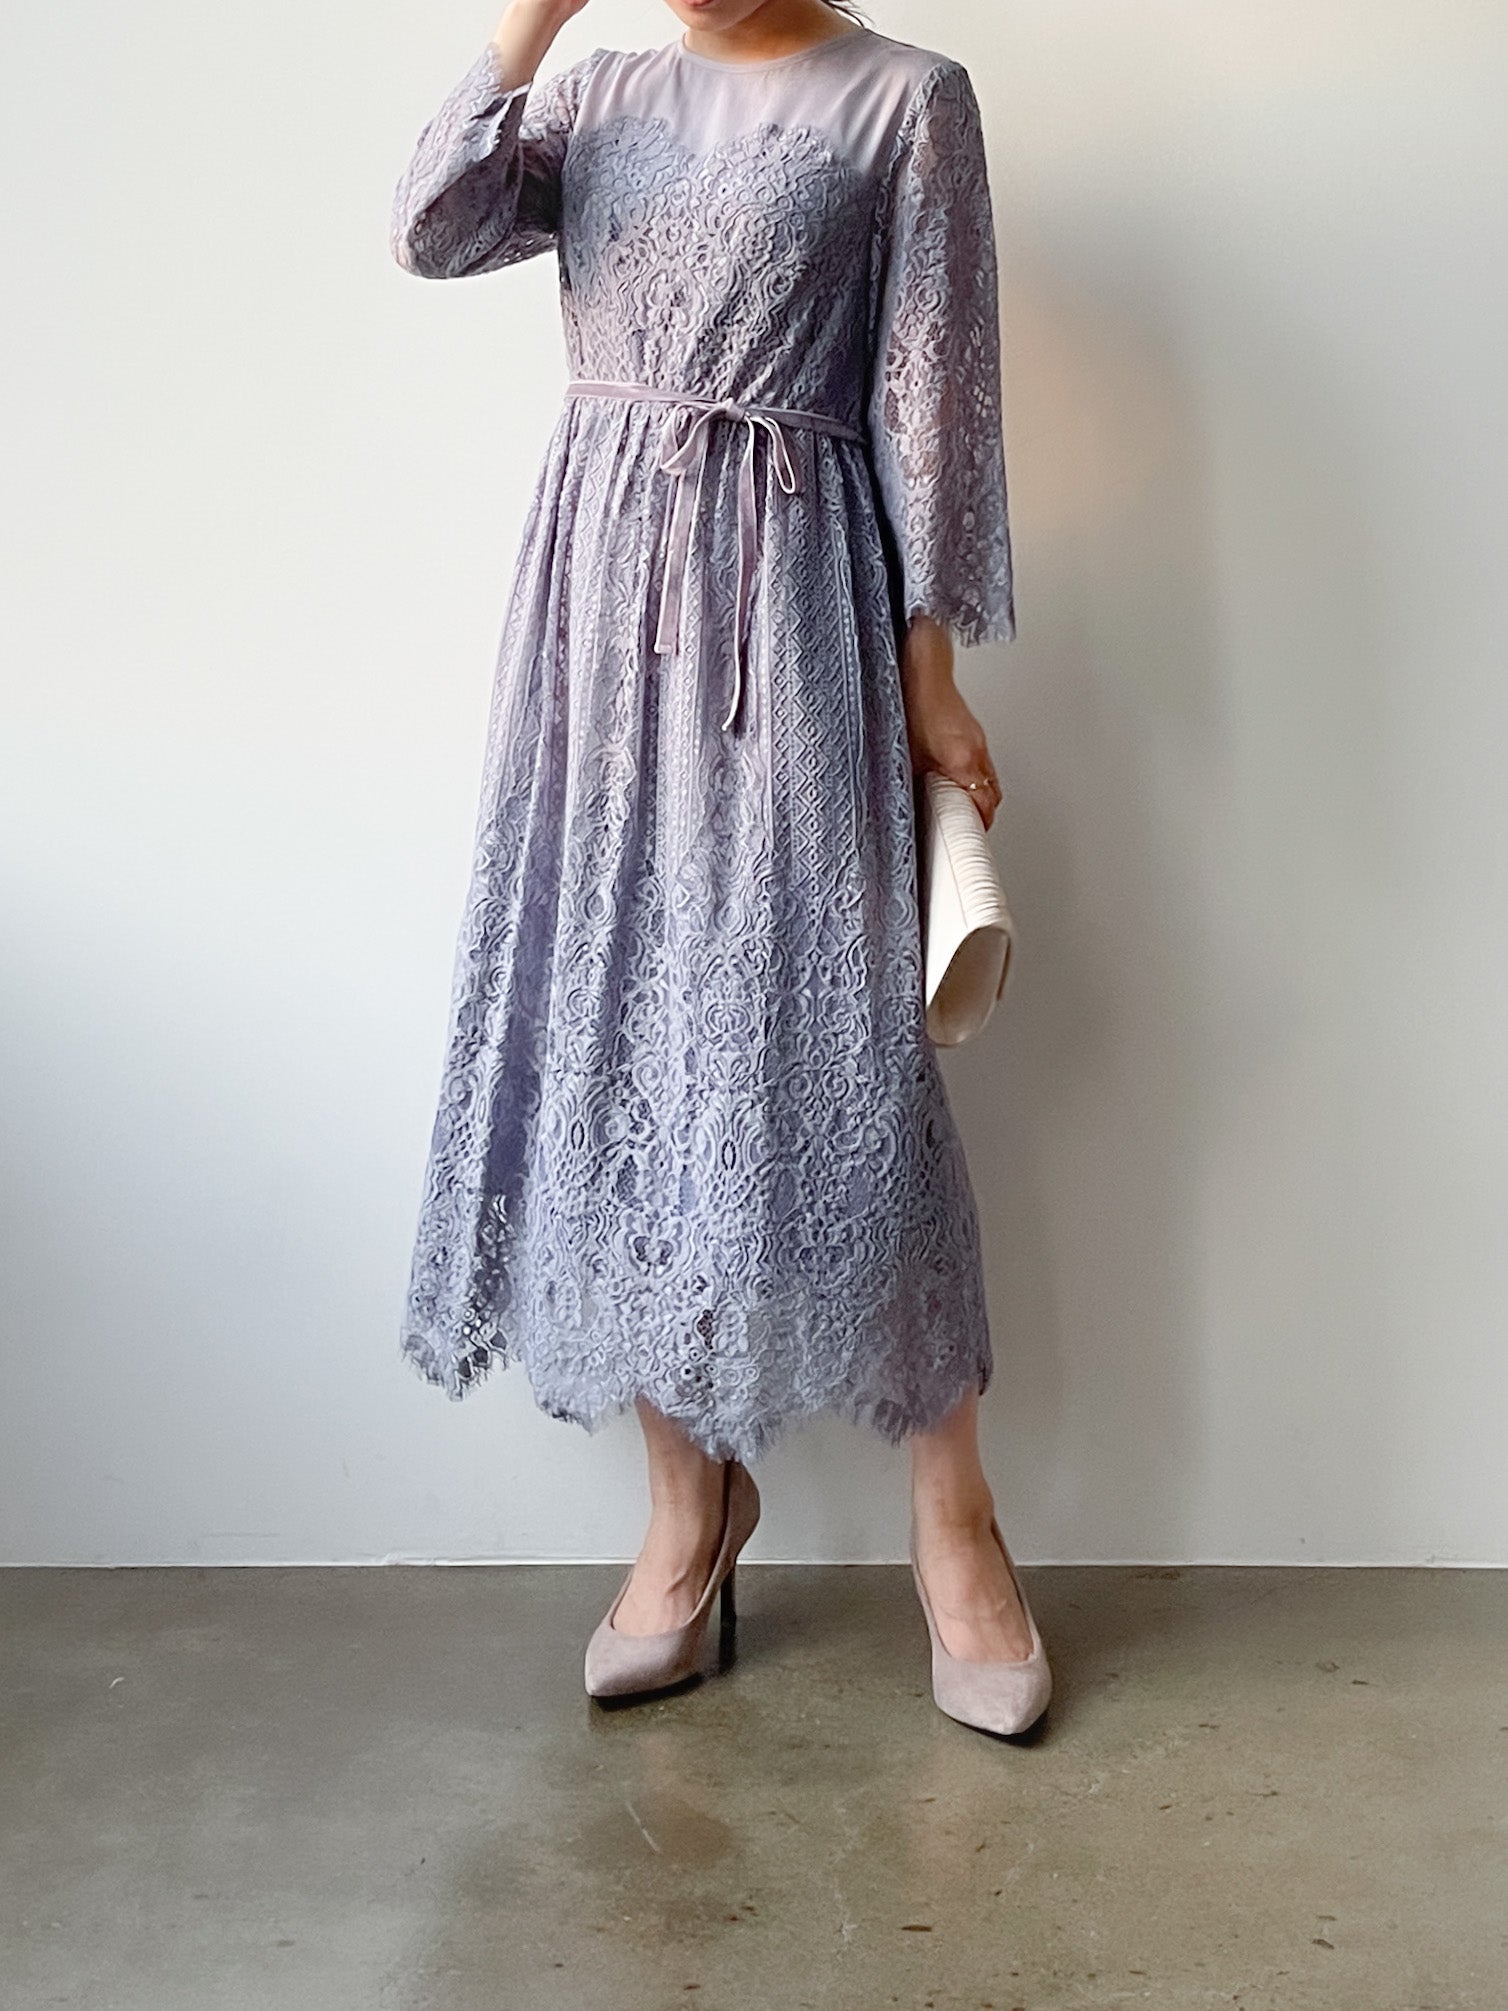 スカラップレースドレス | 小柄・低身長女性向けファッション通販 